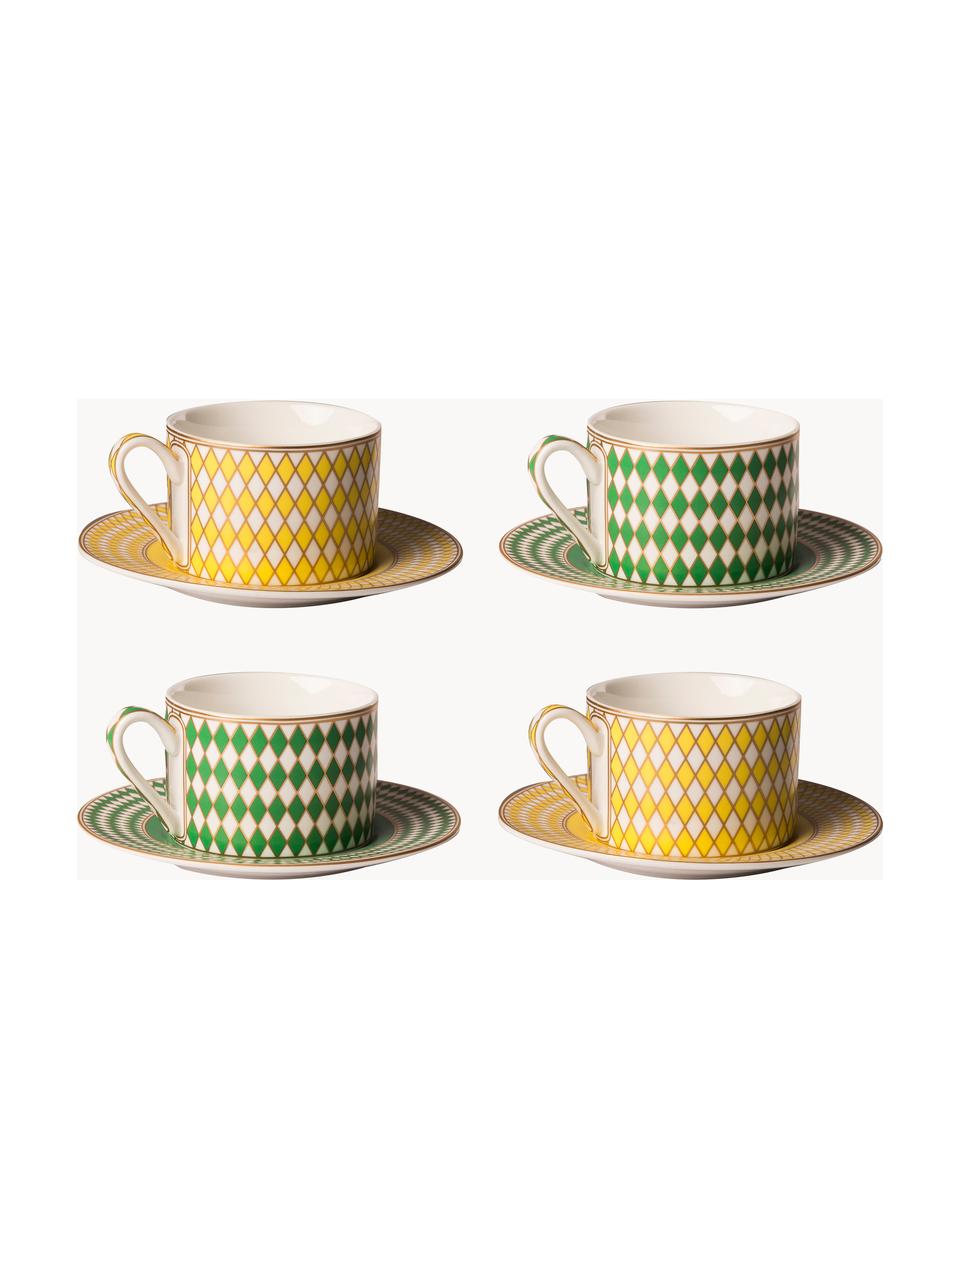 Sada šálků na kávu s podšálky Chess, 4 díly, Glazovaný porcelán, Žlutá, zelená, tlumeně bílá, Ø 9 cm, V 6 cm, 200 ml